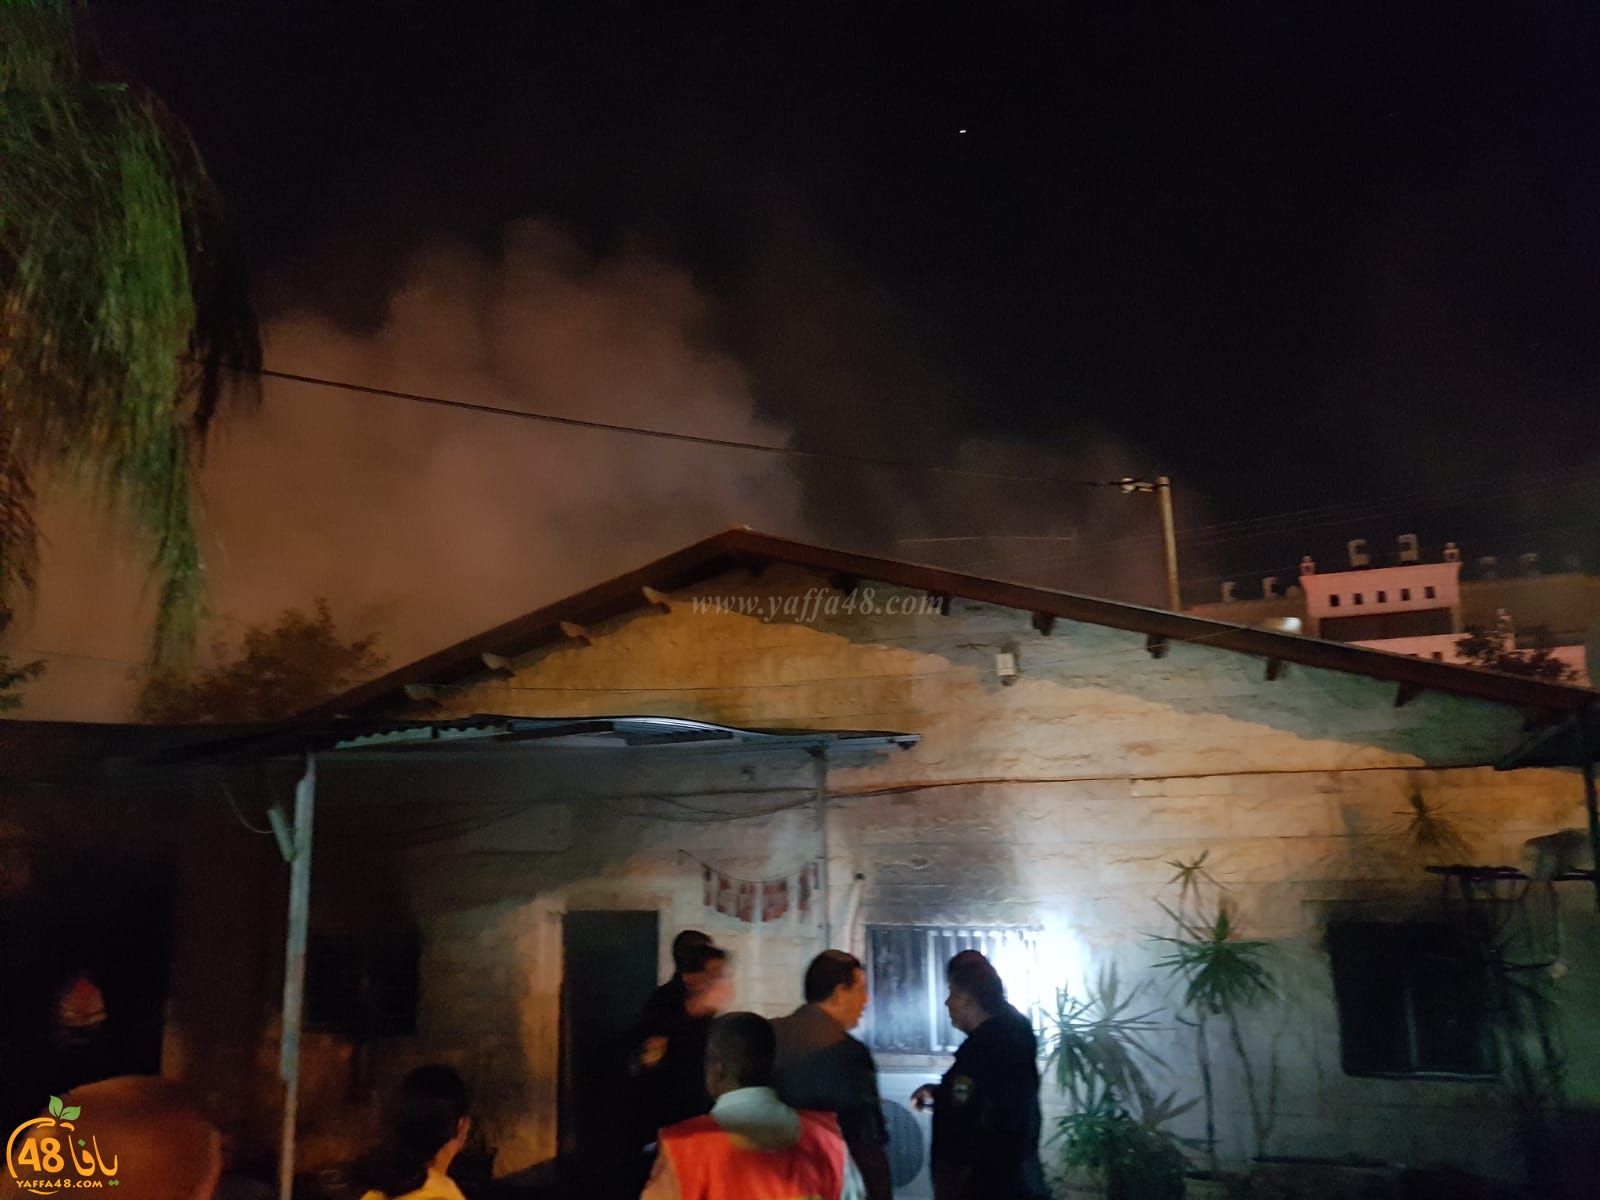  بالصور: احتراق منزل في مدينة الرملة دون وقوع اصابات 